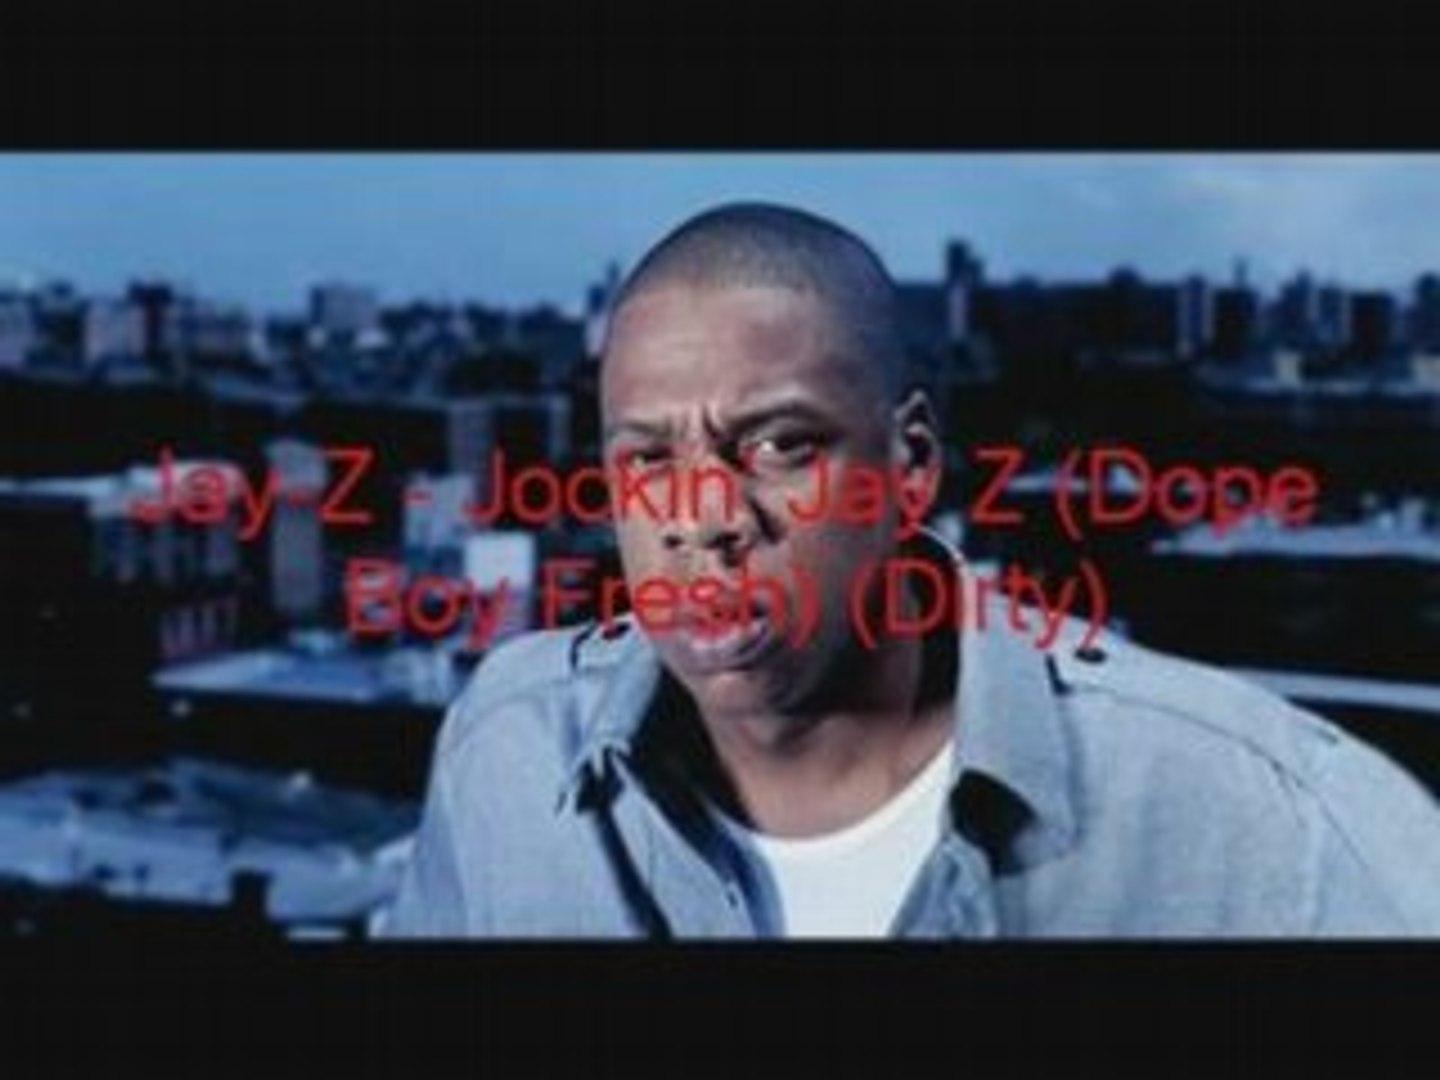 Jay-Z  Jockin' Jay Z (Dope Boy Fresh) (Dirty)